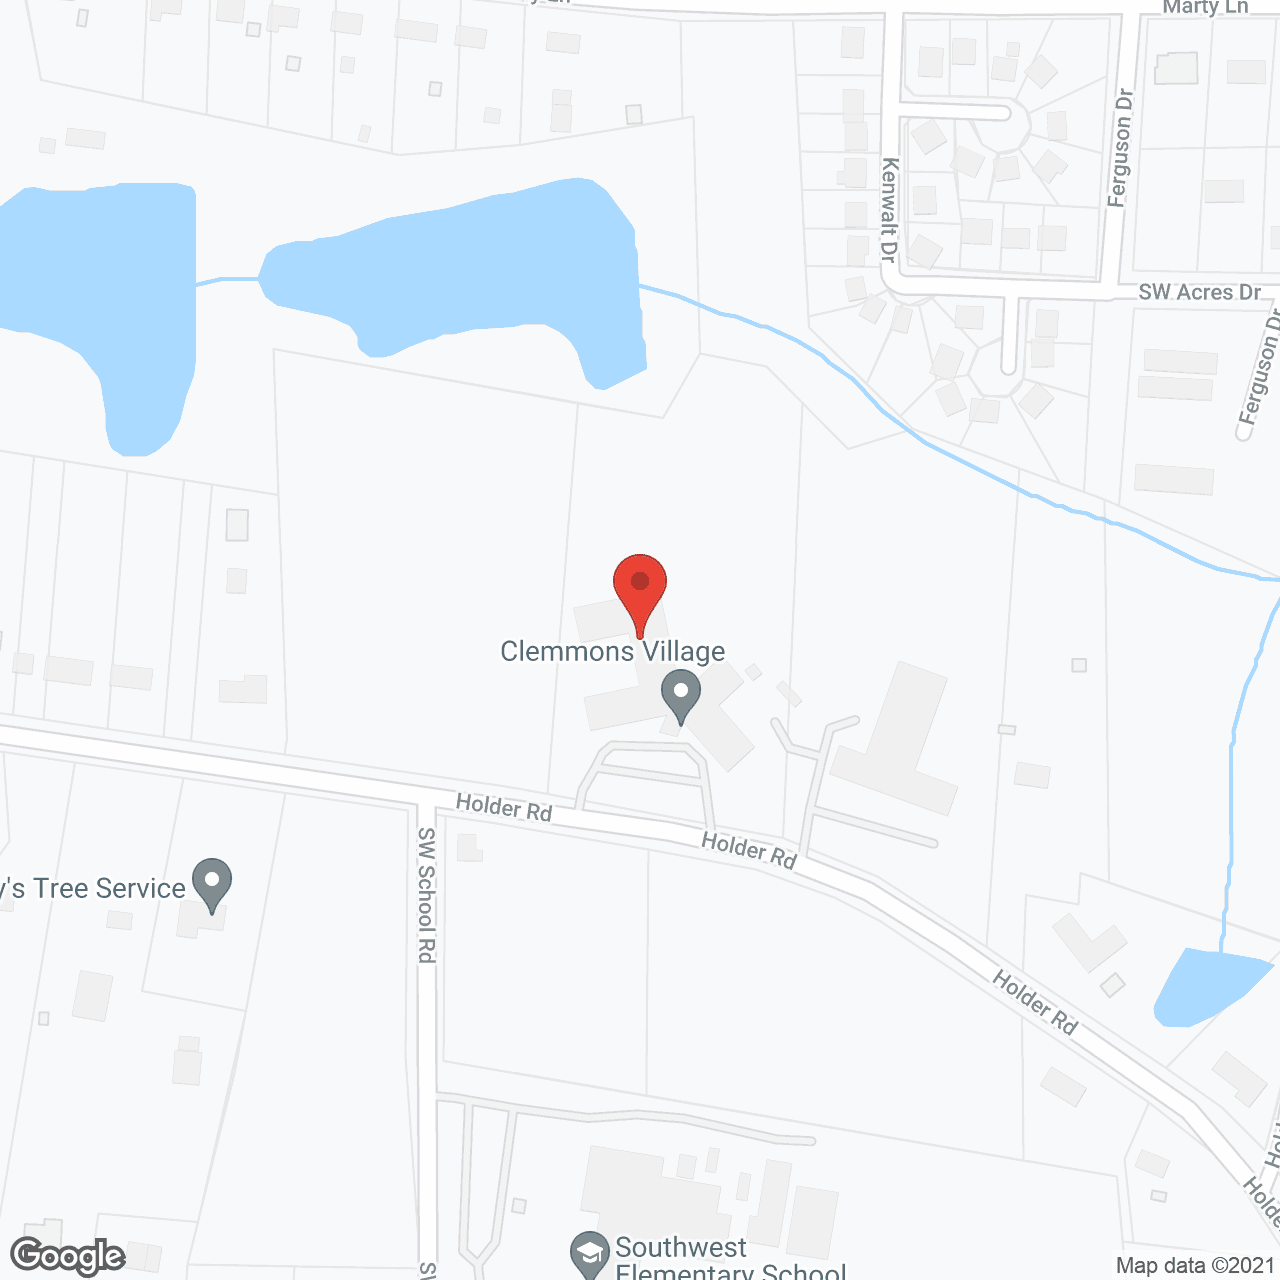 Clemmons Village II in google map